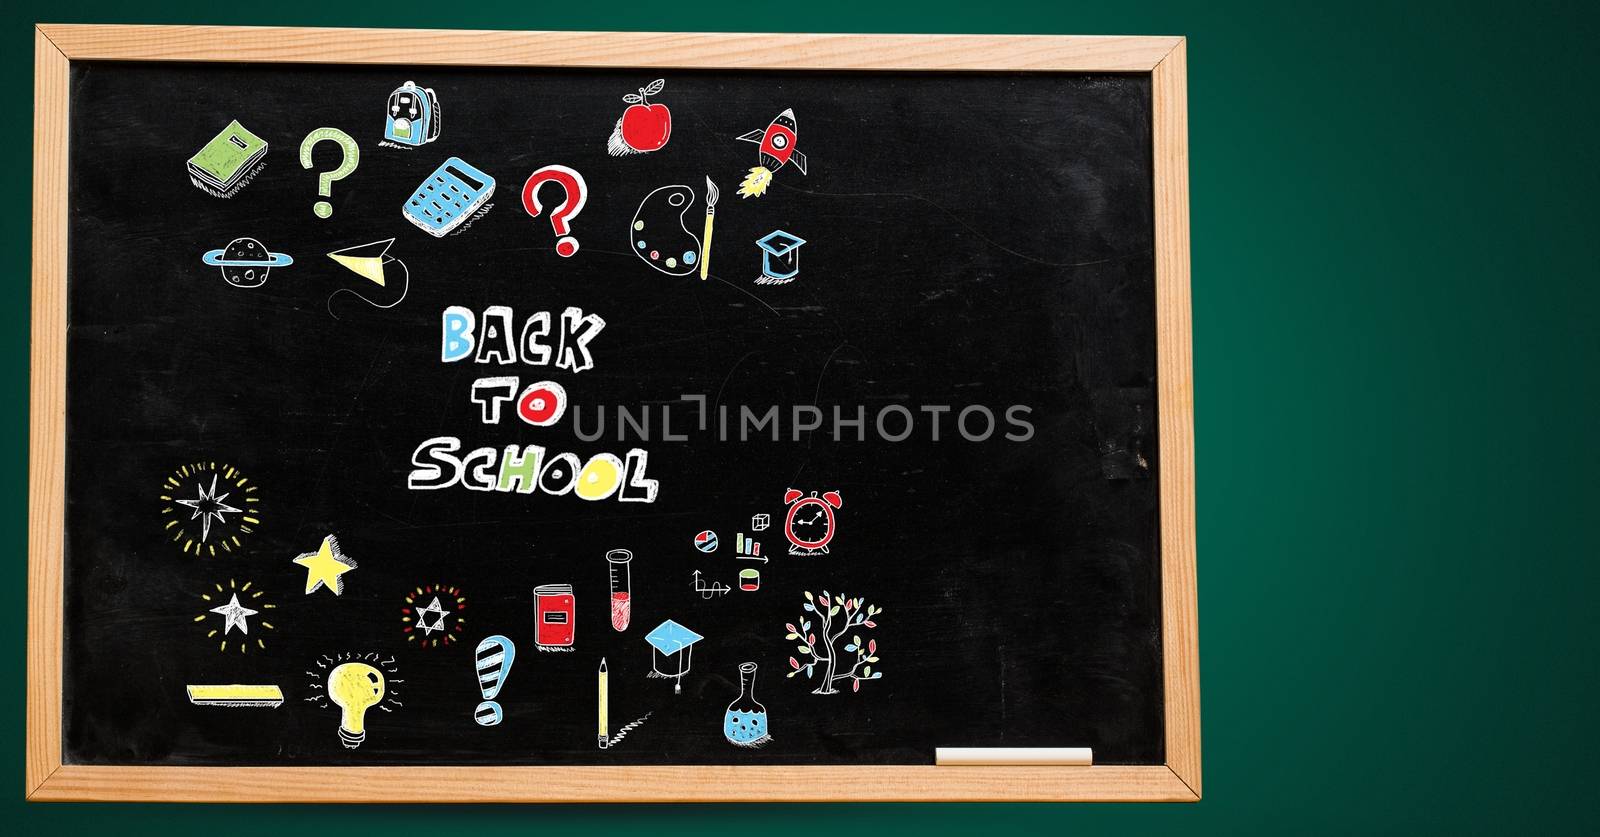 Back to school Education drawing on blackboard for school by Wavebreakmedia